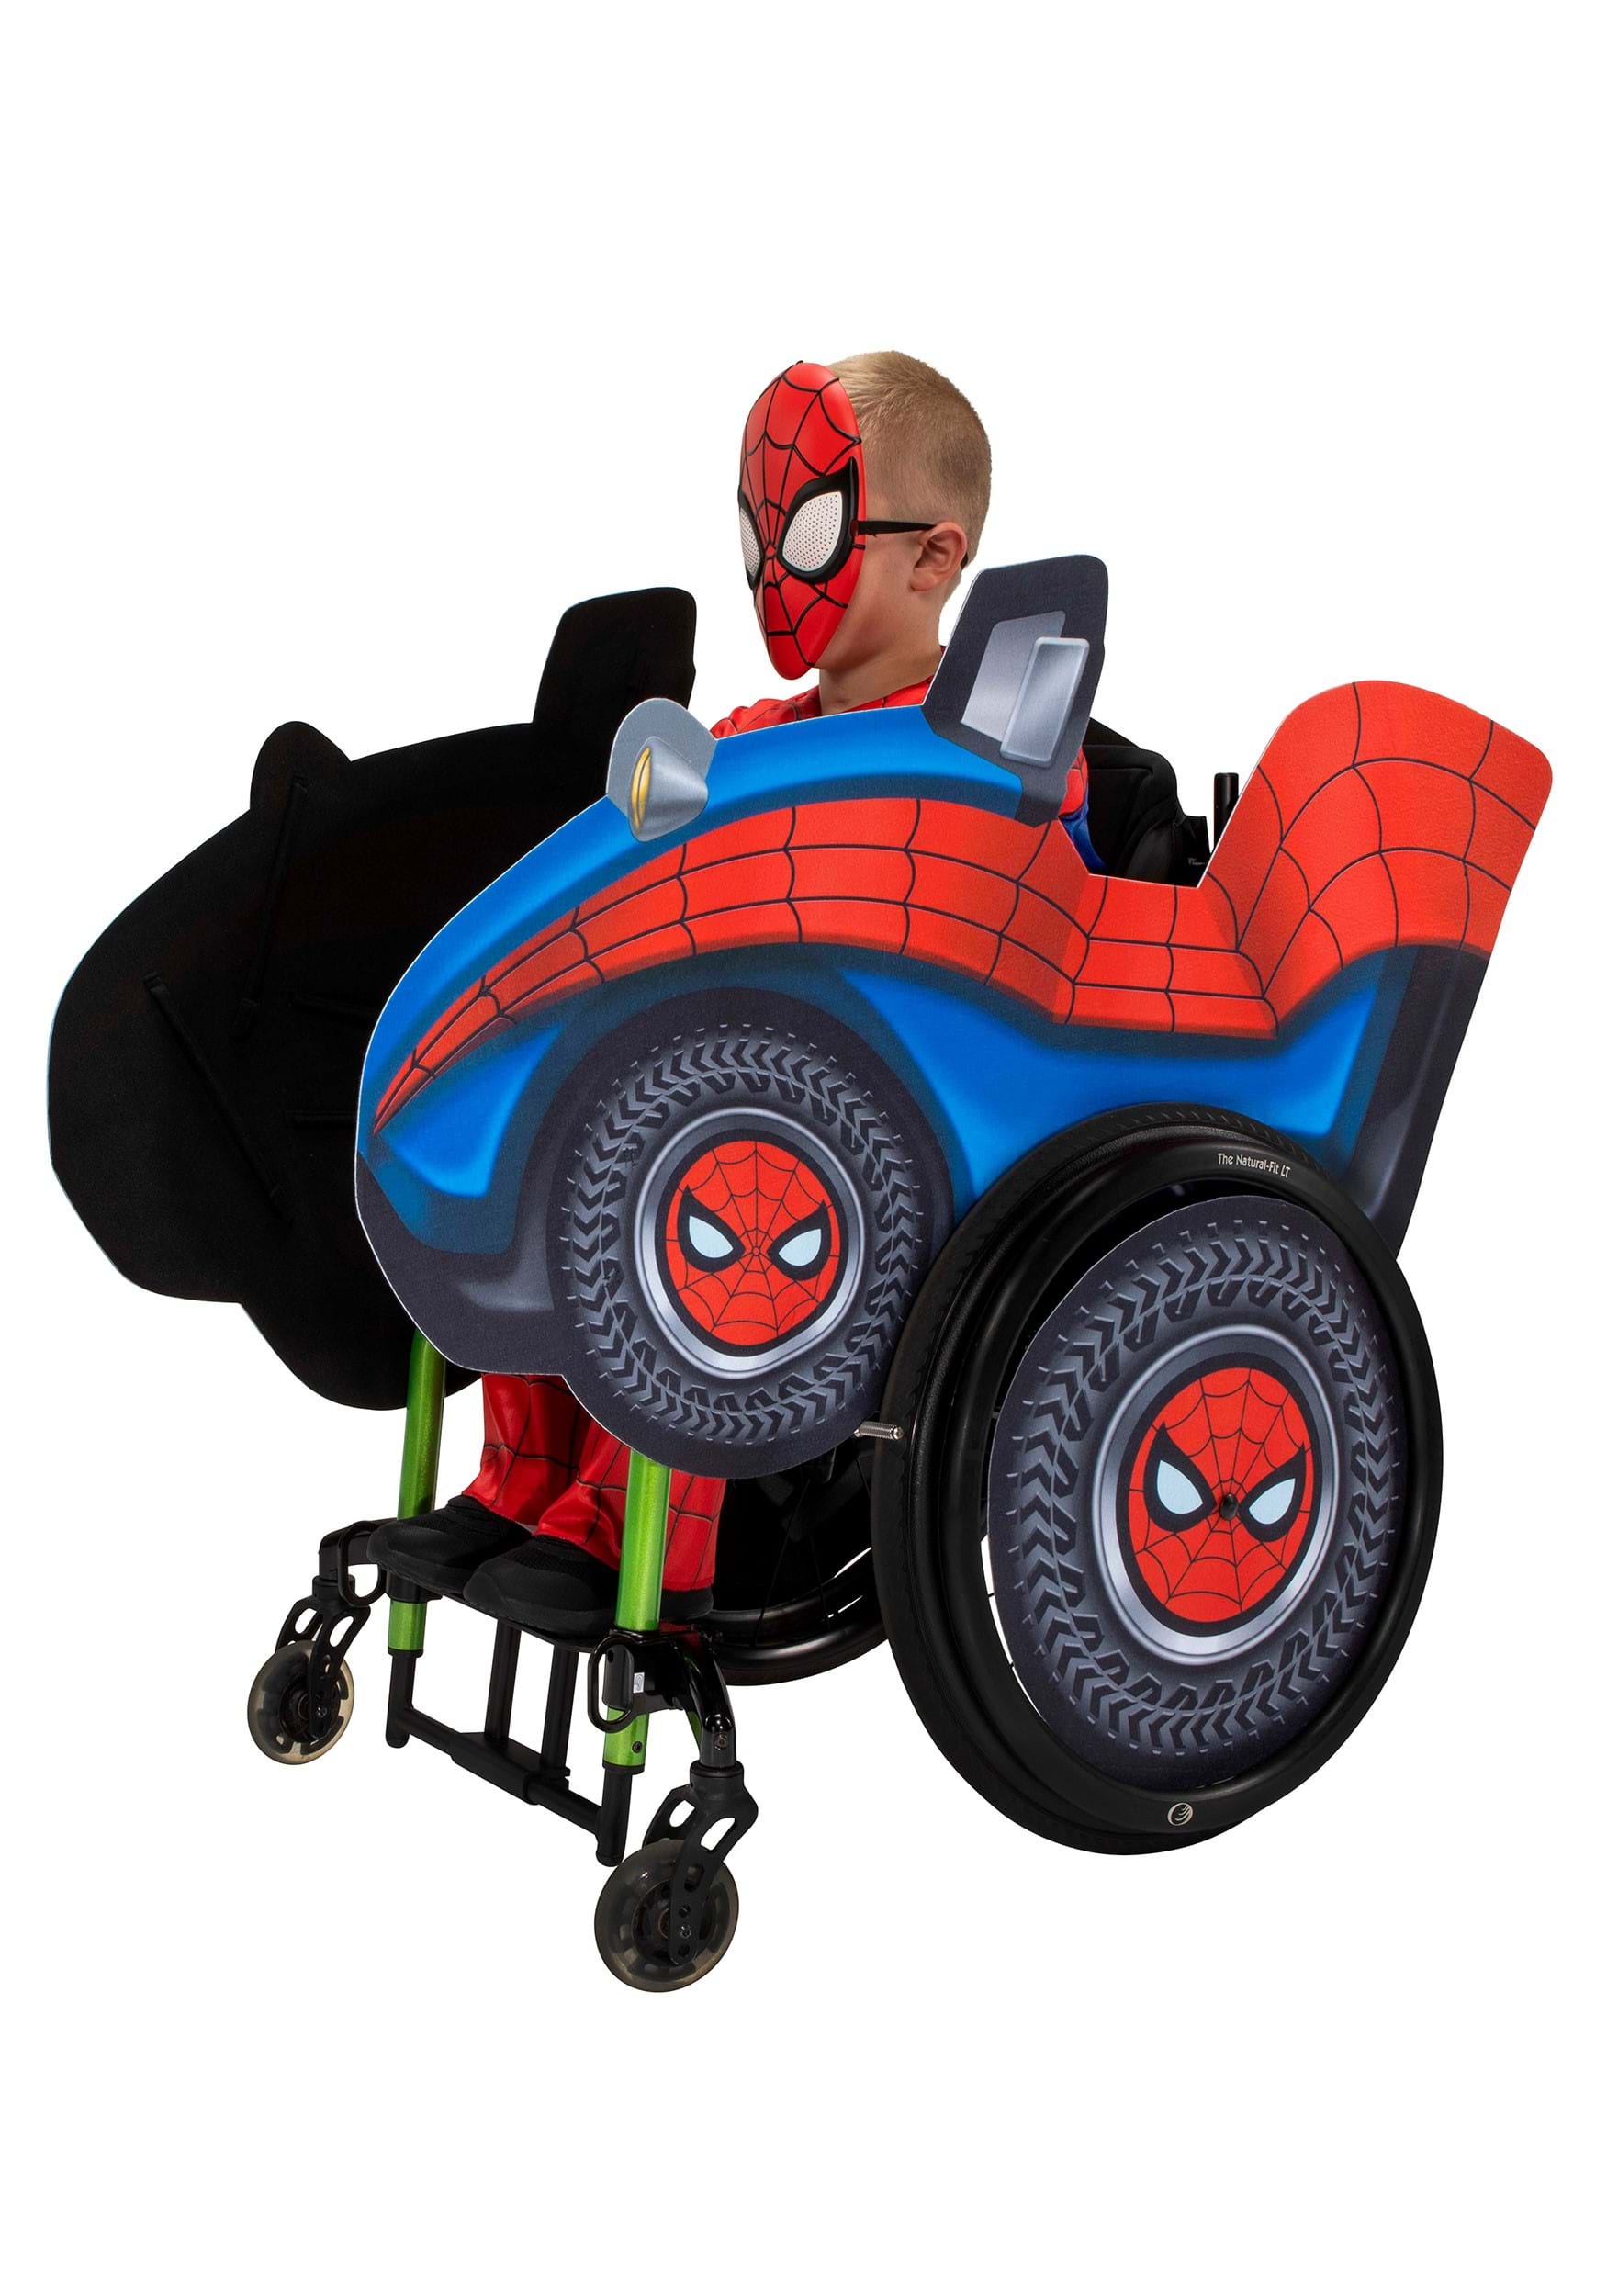 Déguisement Spider-Man garçon adapté PMR- fauteuil roulant